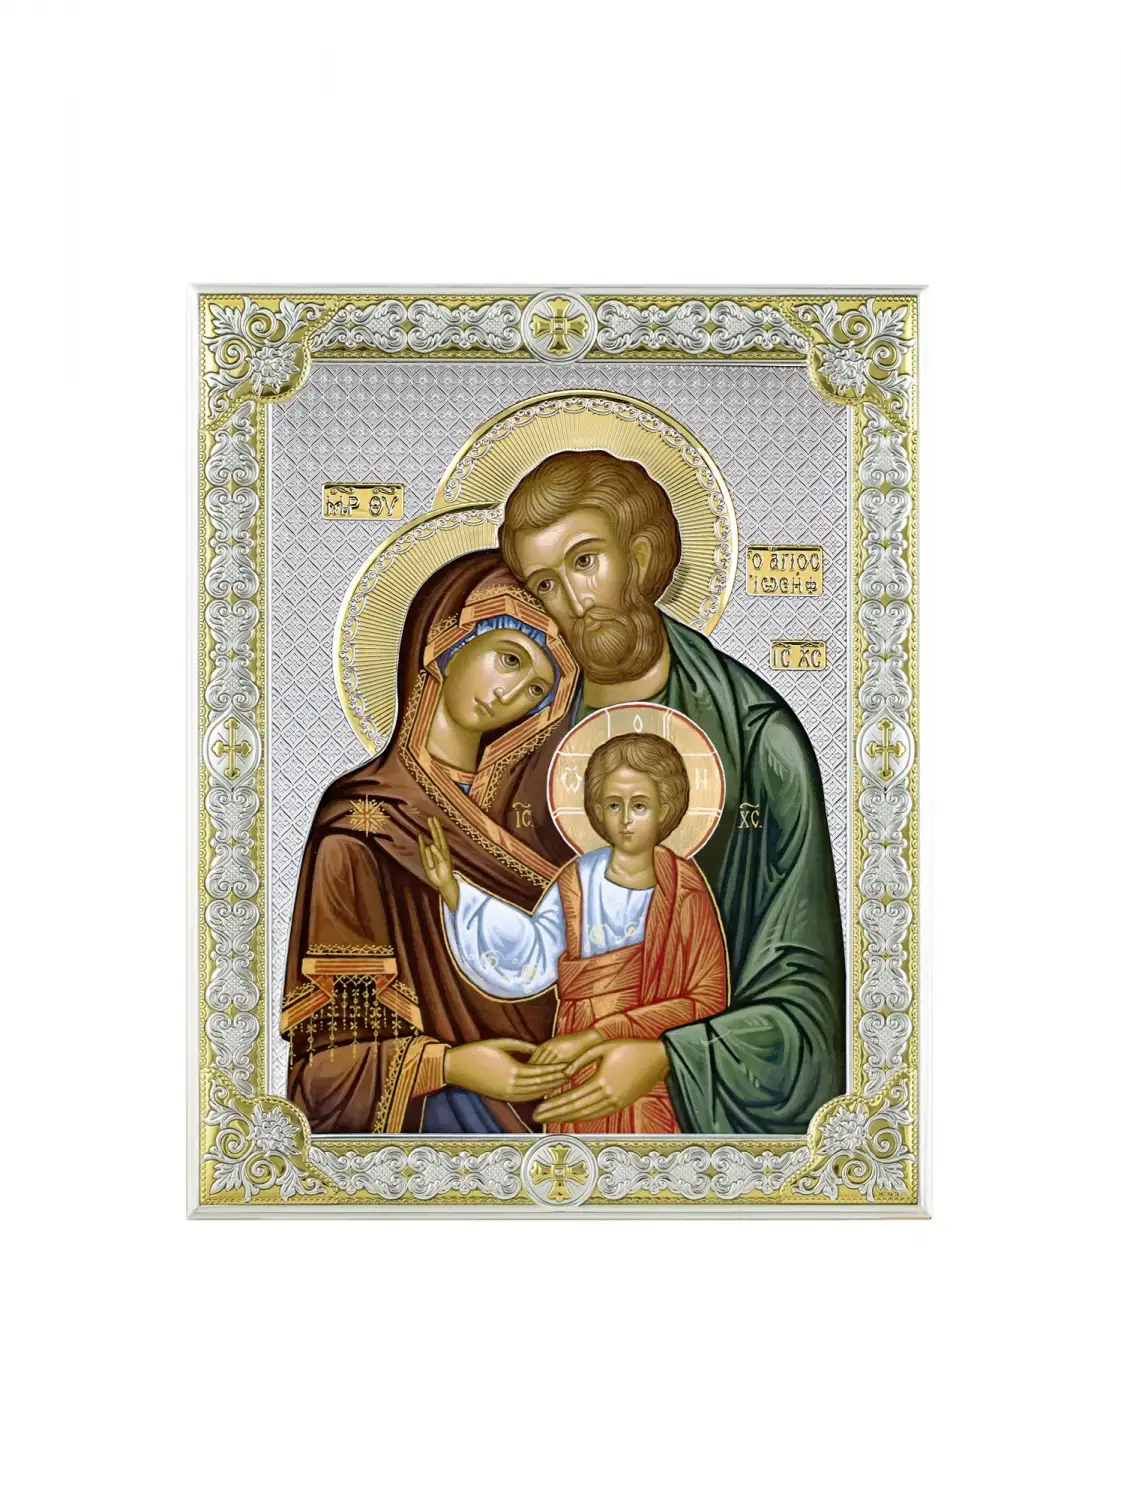 Икона Святое семейство (12*16) икона святое семейство размер 8 5 х 12 5 см